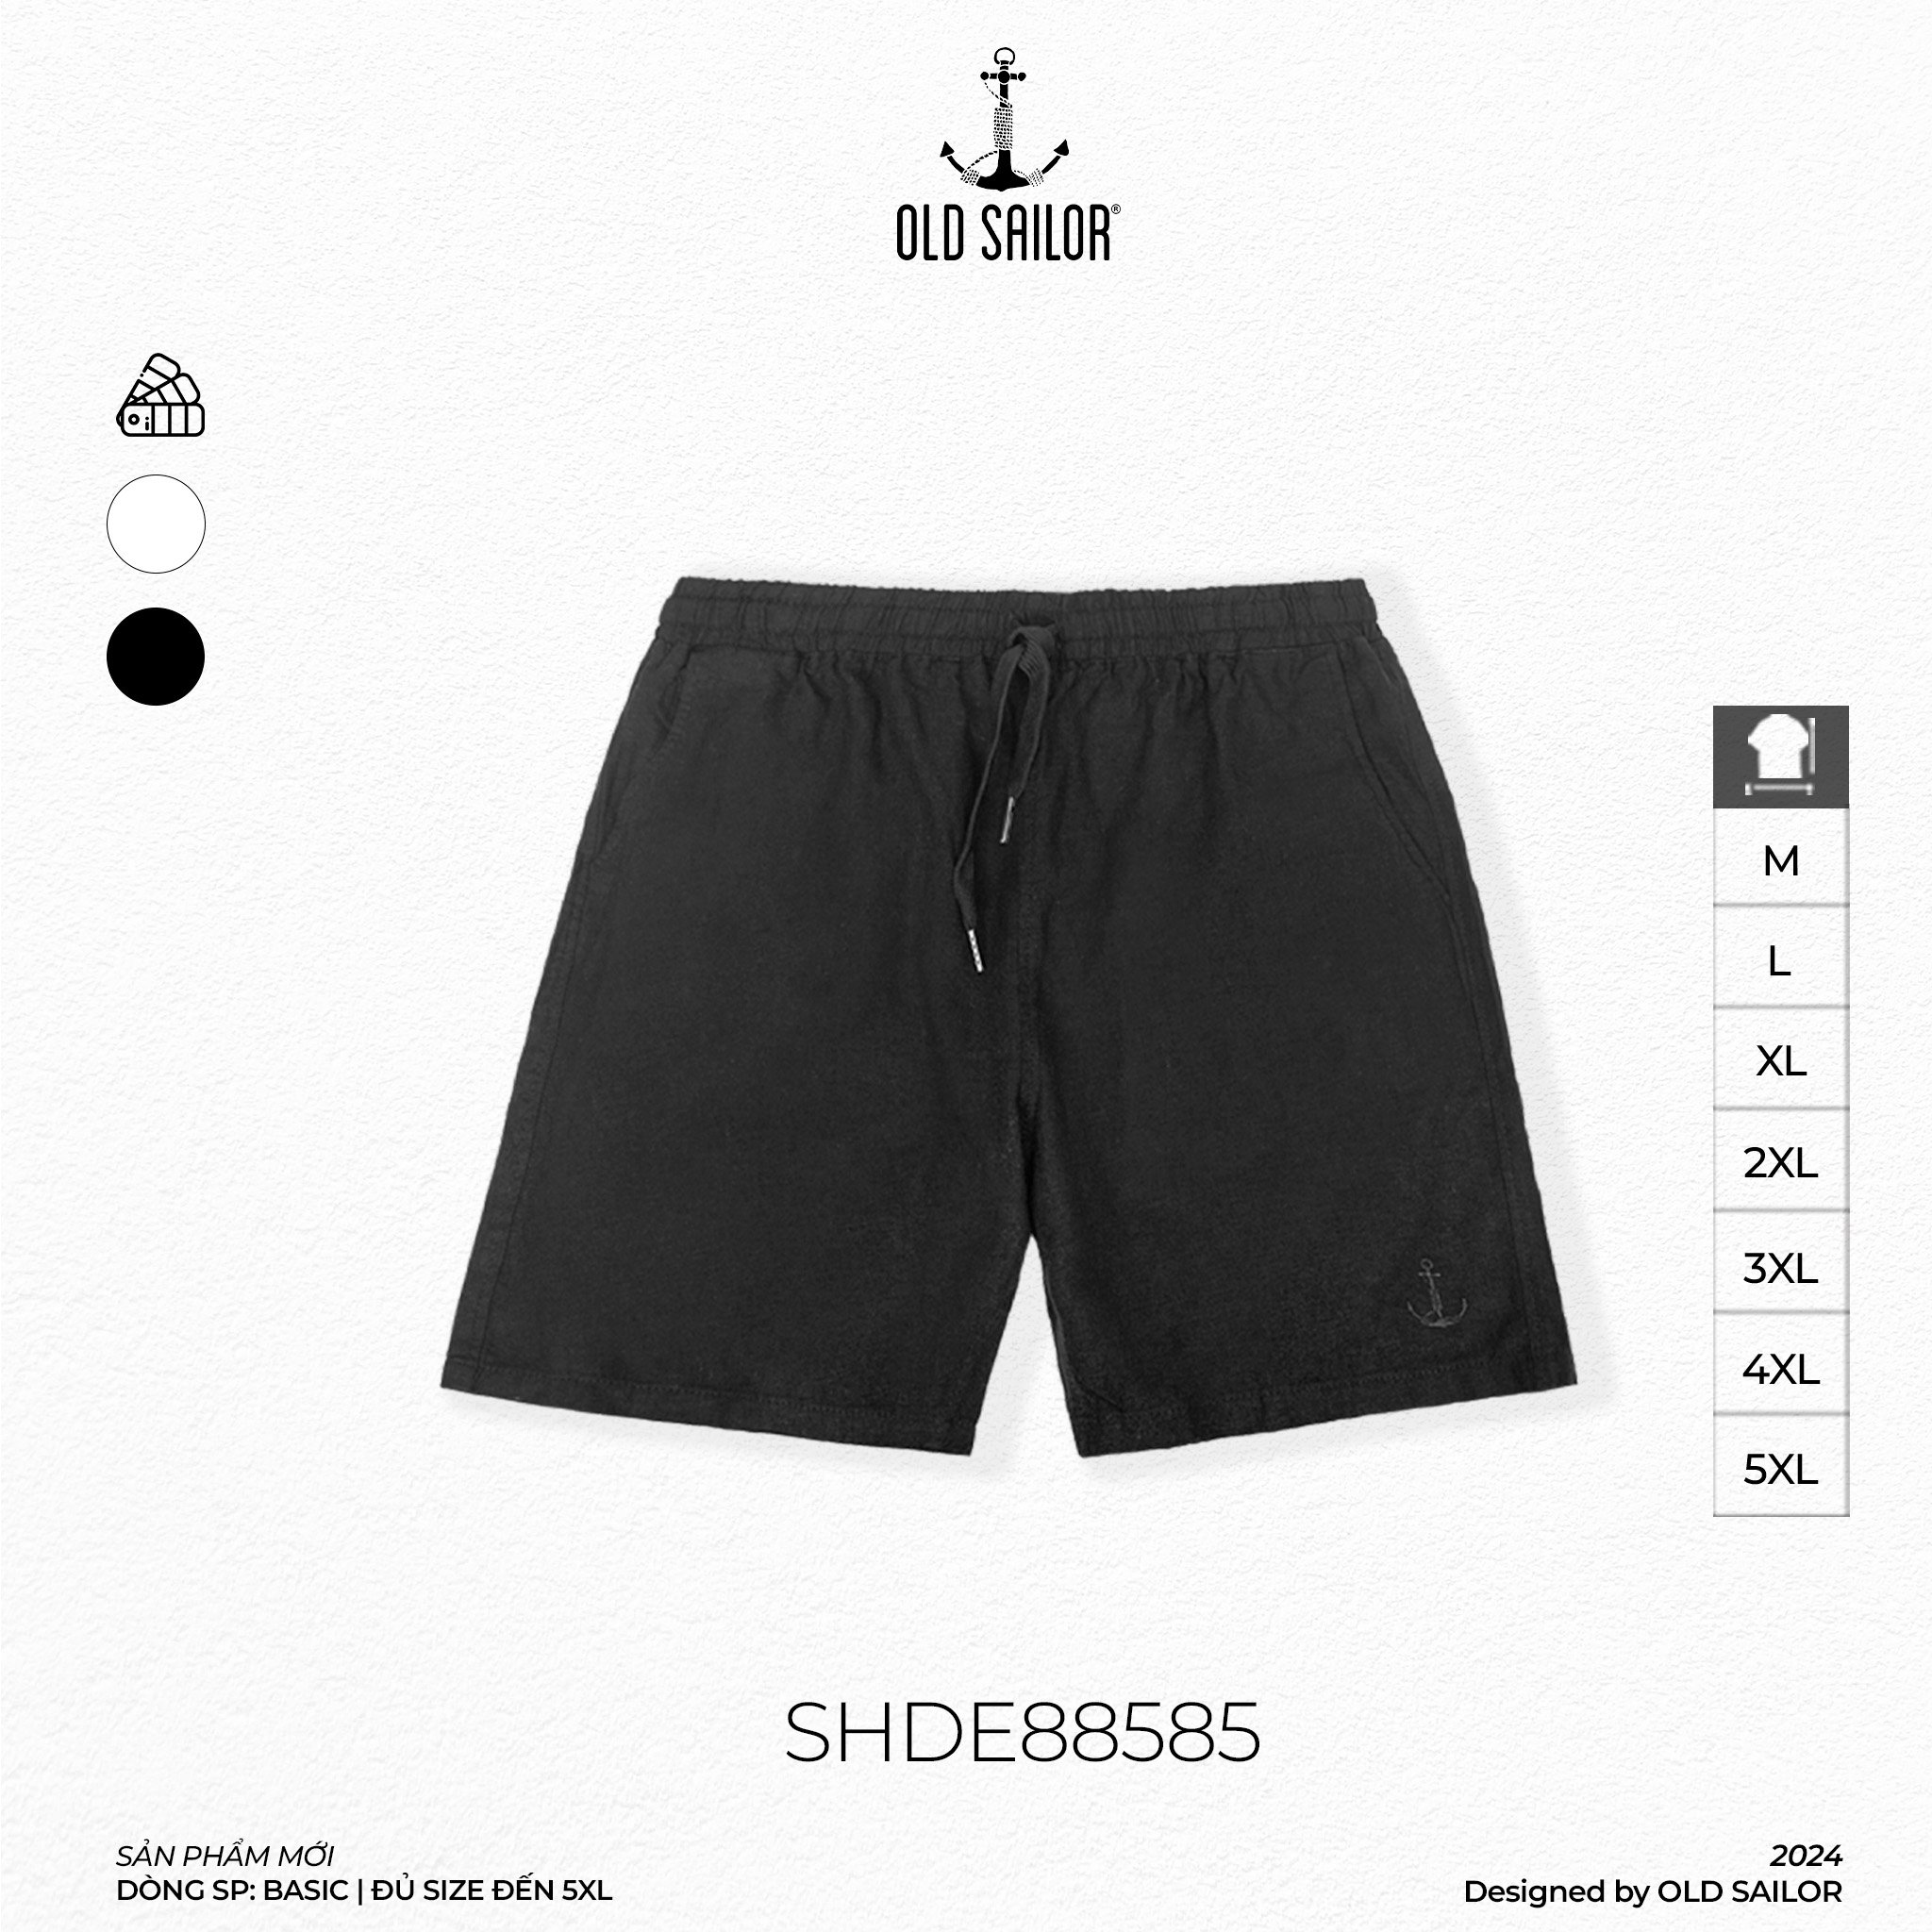 Quần Lửng Linen Old Sailor - SHDE88585 - đen - Big size upto 5XL